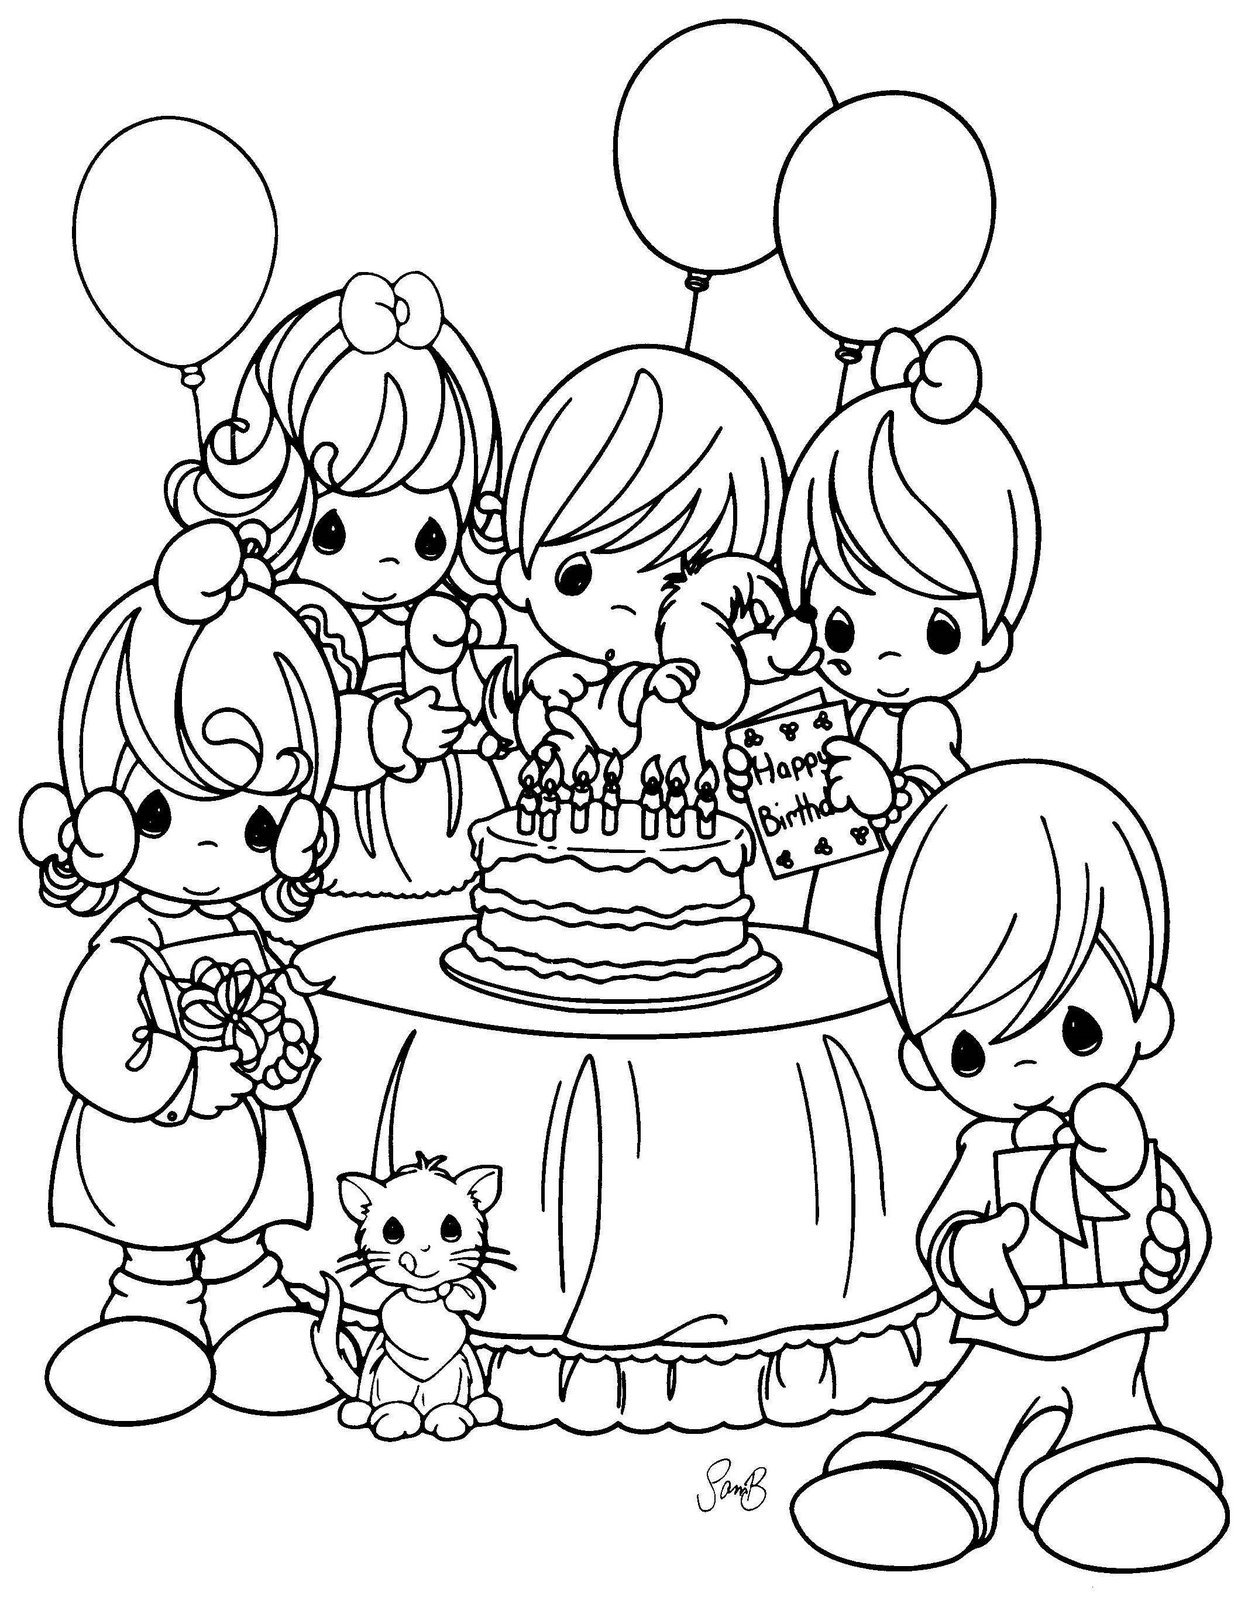 С днем рождения раскраска для детей